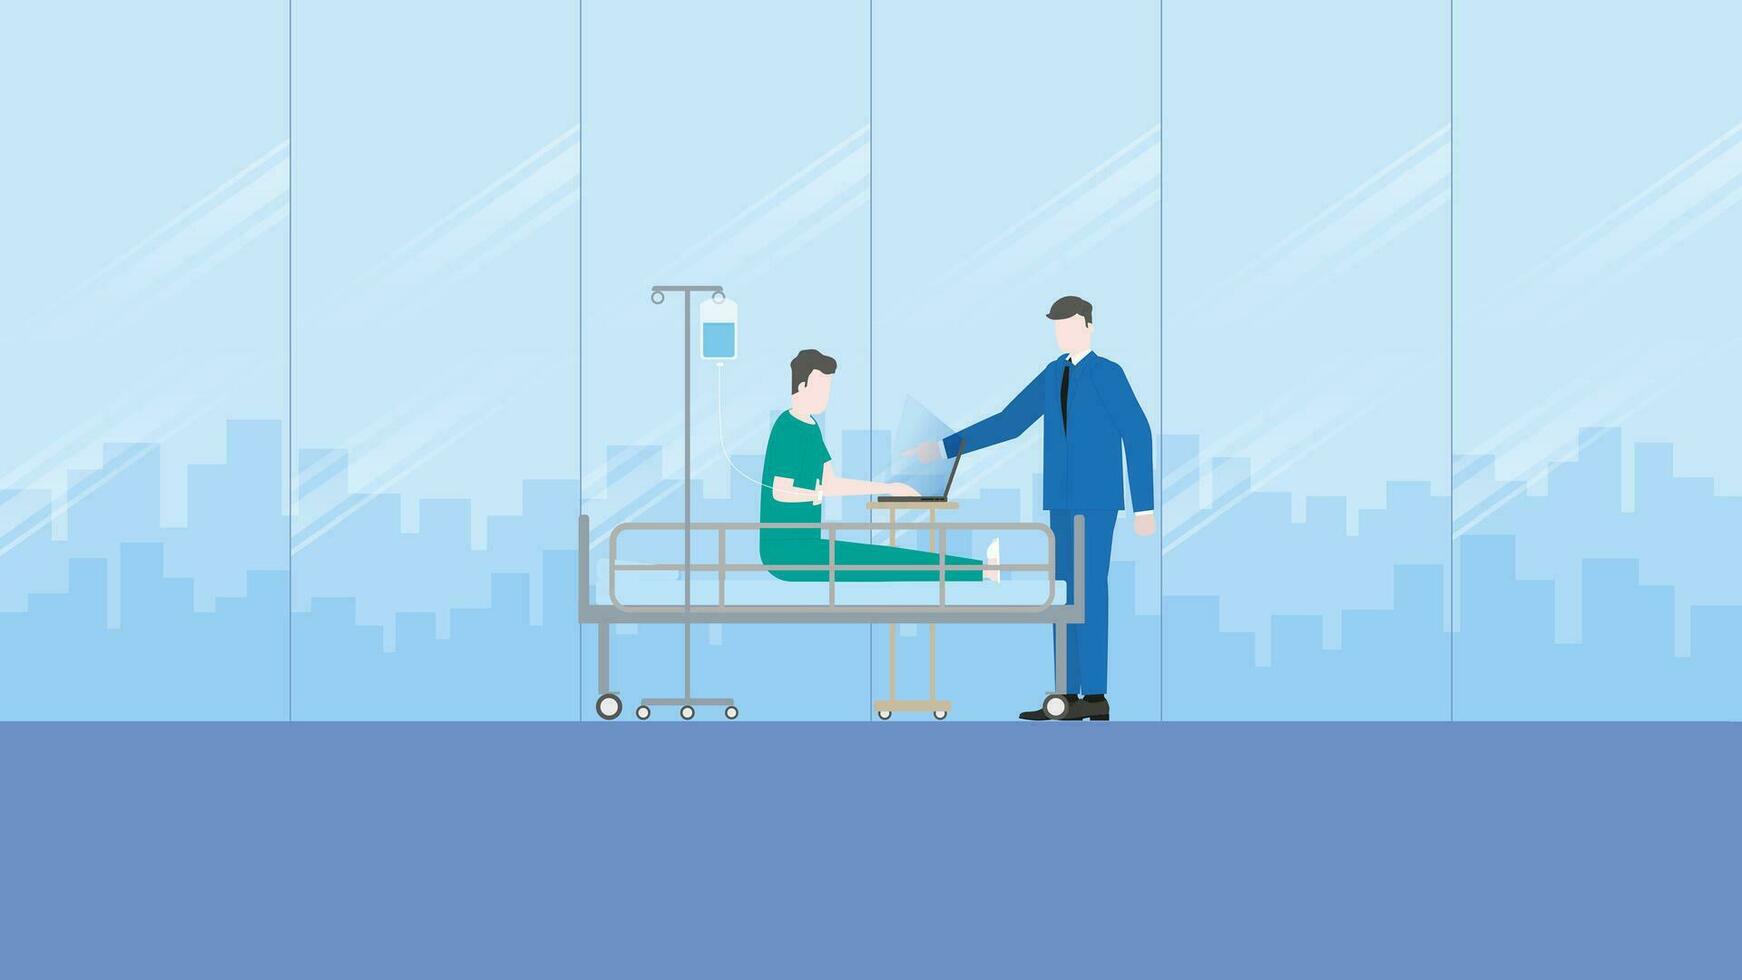 en chef tilldelar uppgifter till en sjuk anställd patient, använder sig av en bärbar dator på en sjukhus säng med en salin lösning medicinsk droppa väska. vektor